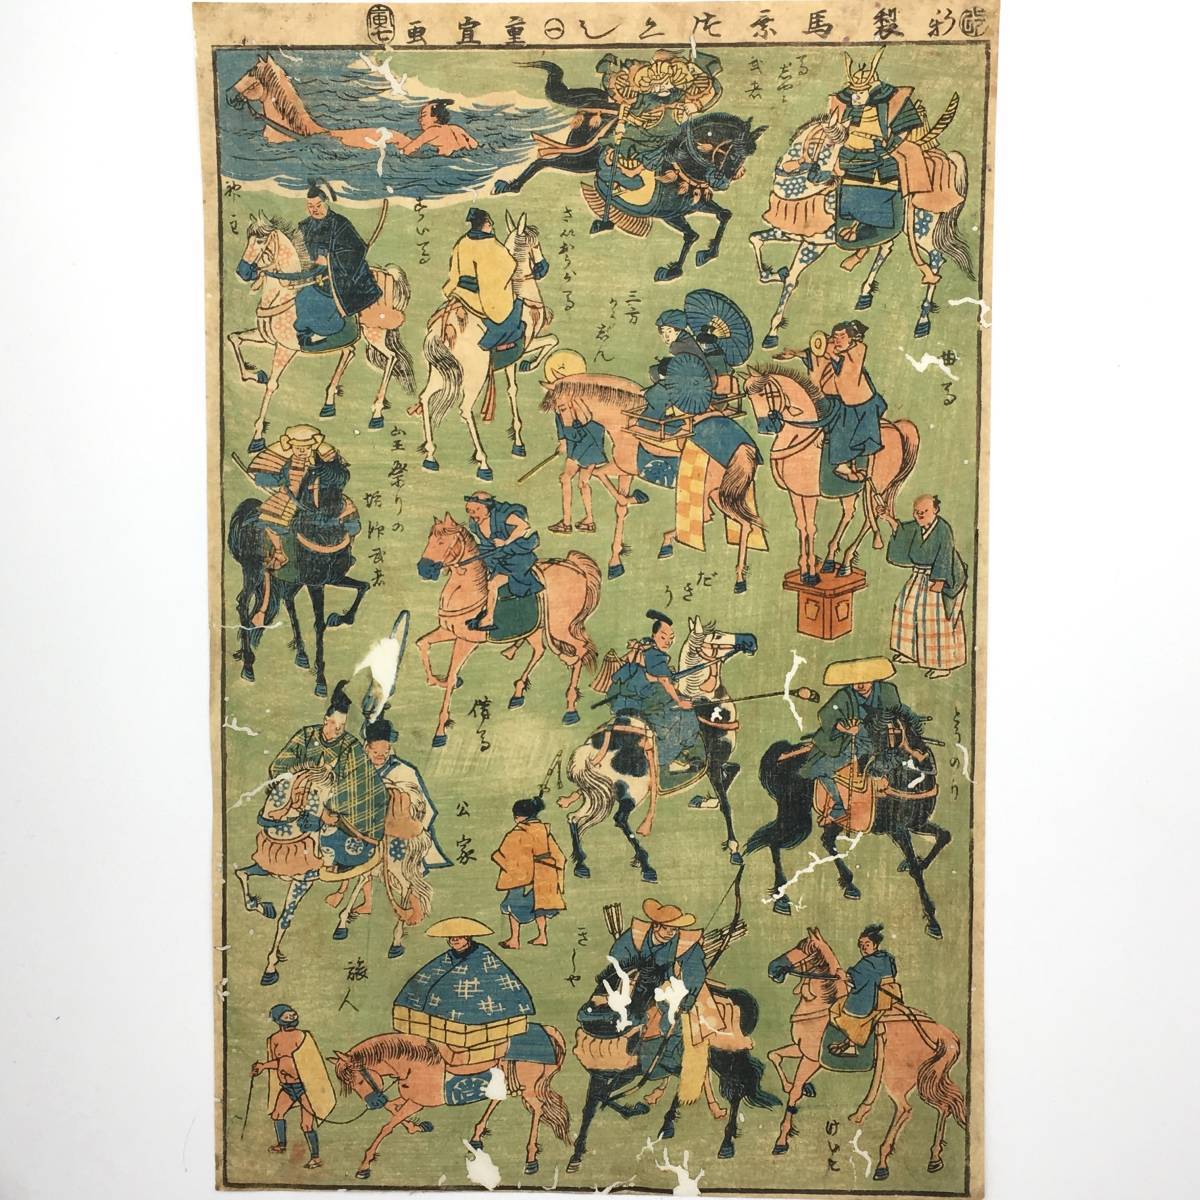 [Hiroshige II (Shigenobu)] Nouvelles scènes d'équitation 1 1855 Nishikie Toy Picture Period Piece/Ukiyo-e Woodblock Print/Scènes d'équitation grand format, Peinture, Ukiyo-e, Impressions, autres